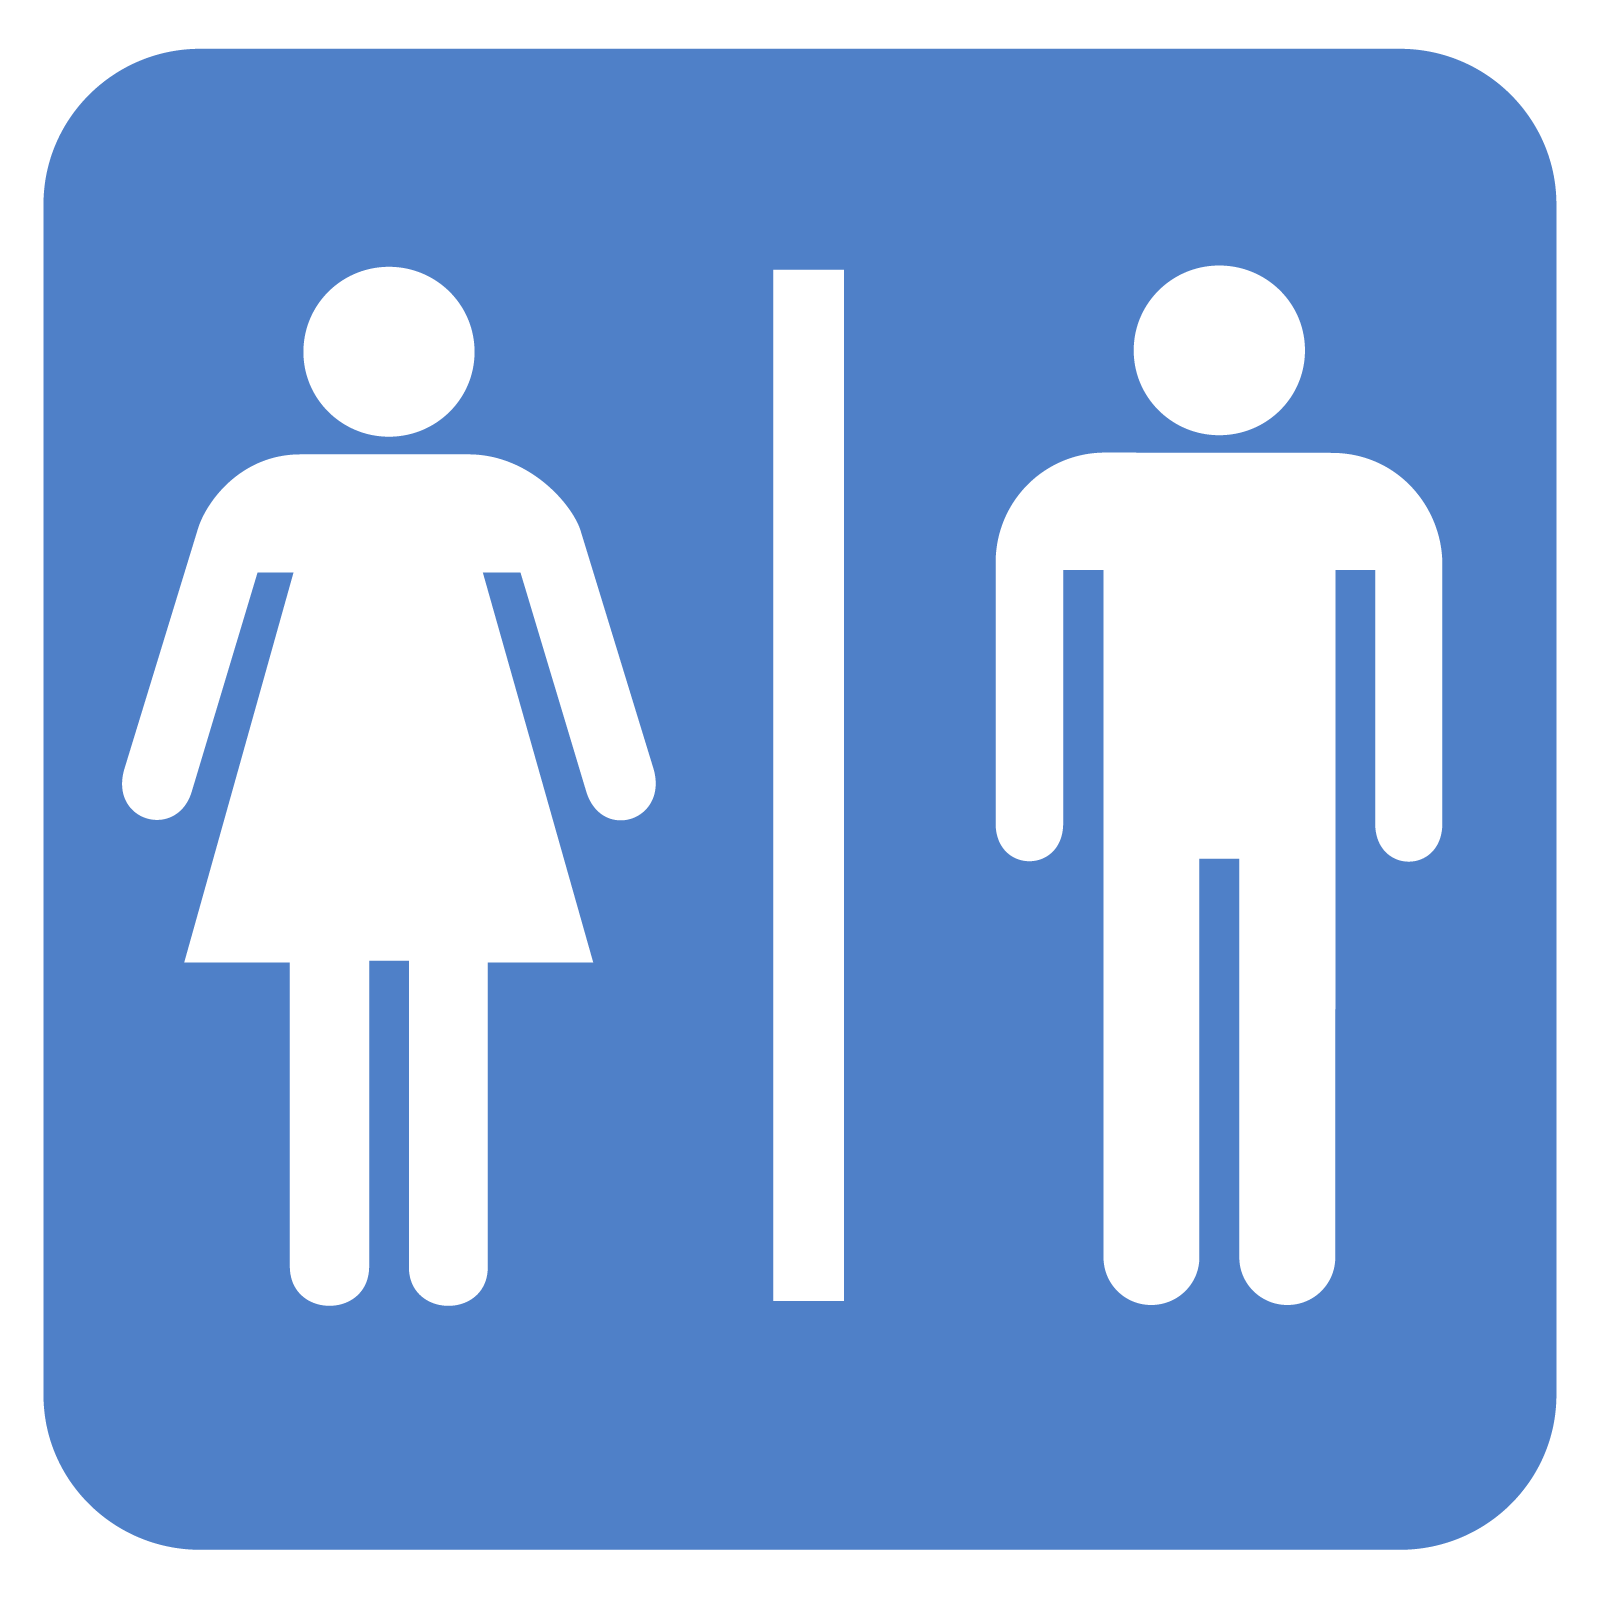 Free Printable Restroom Signs